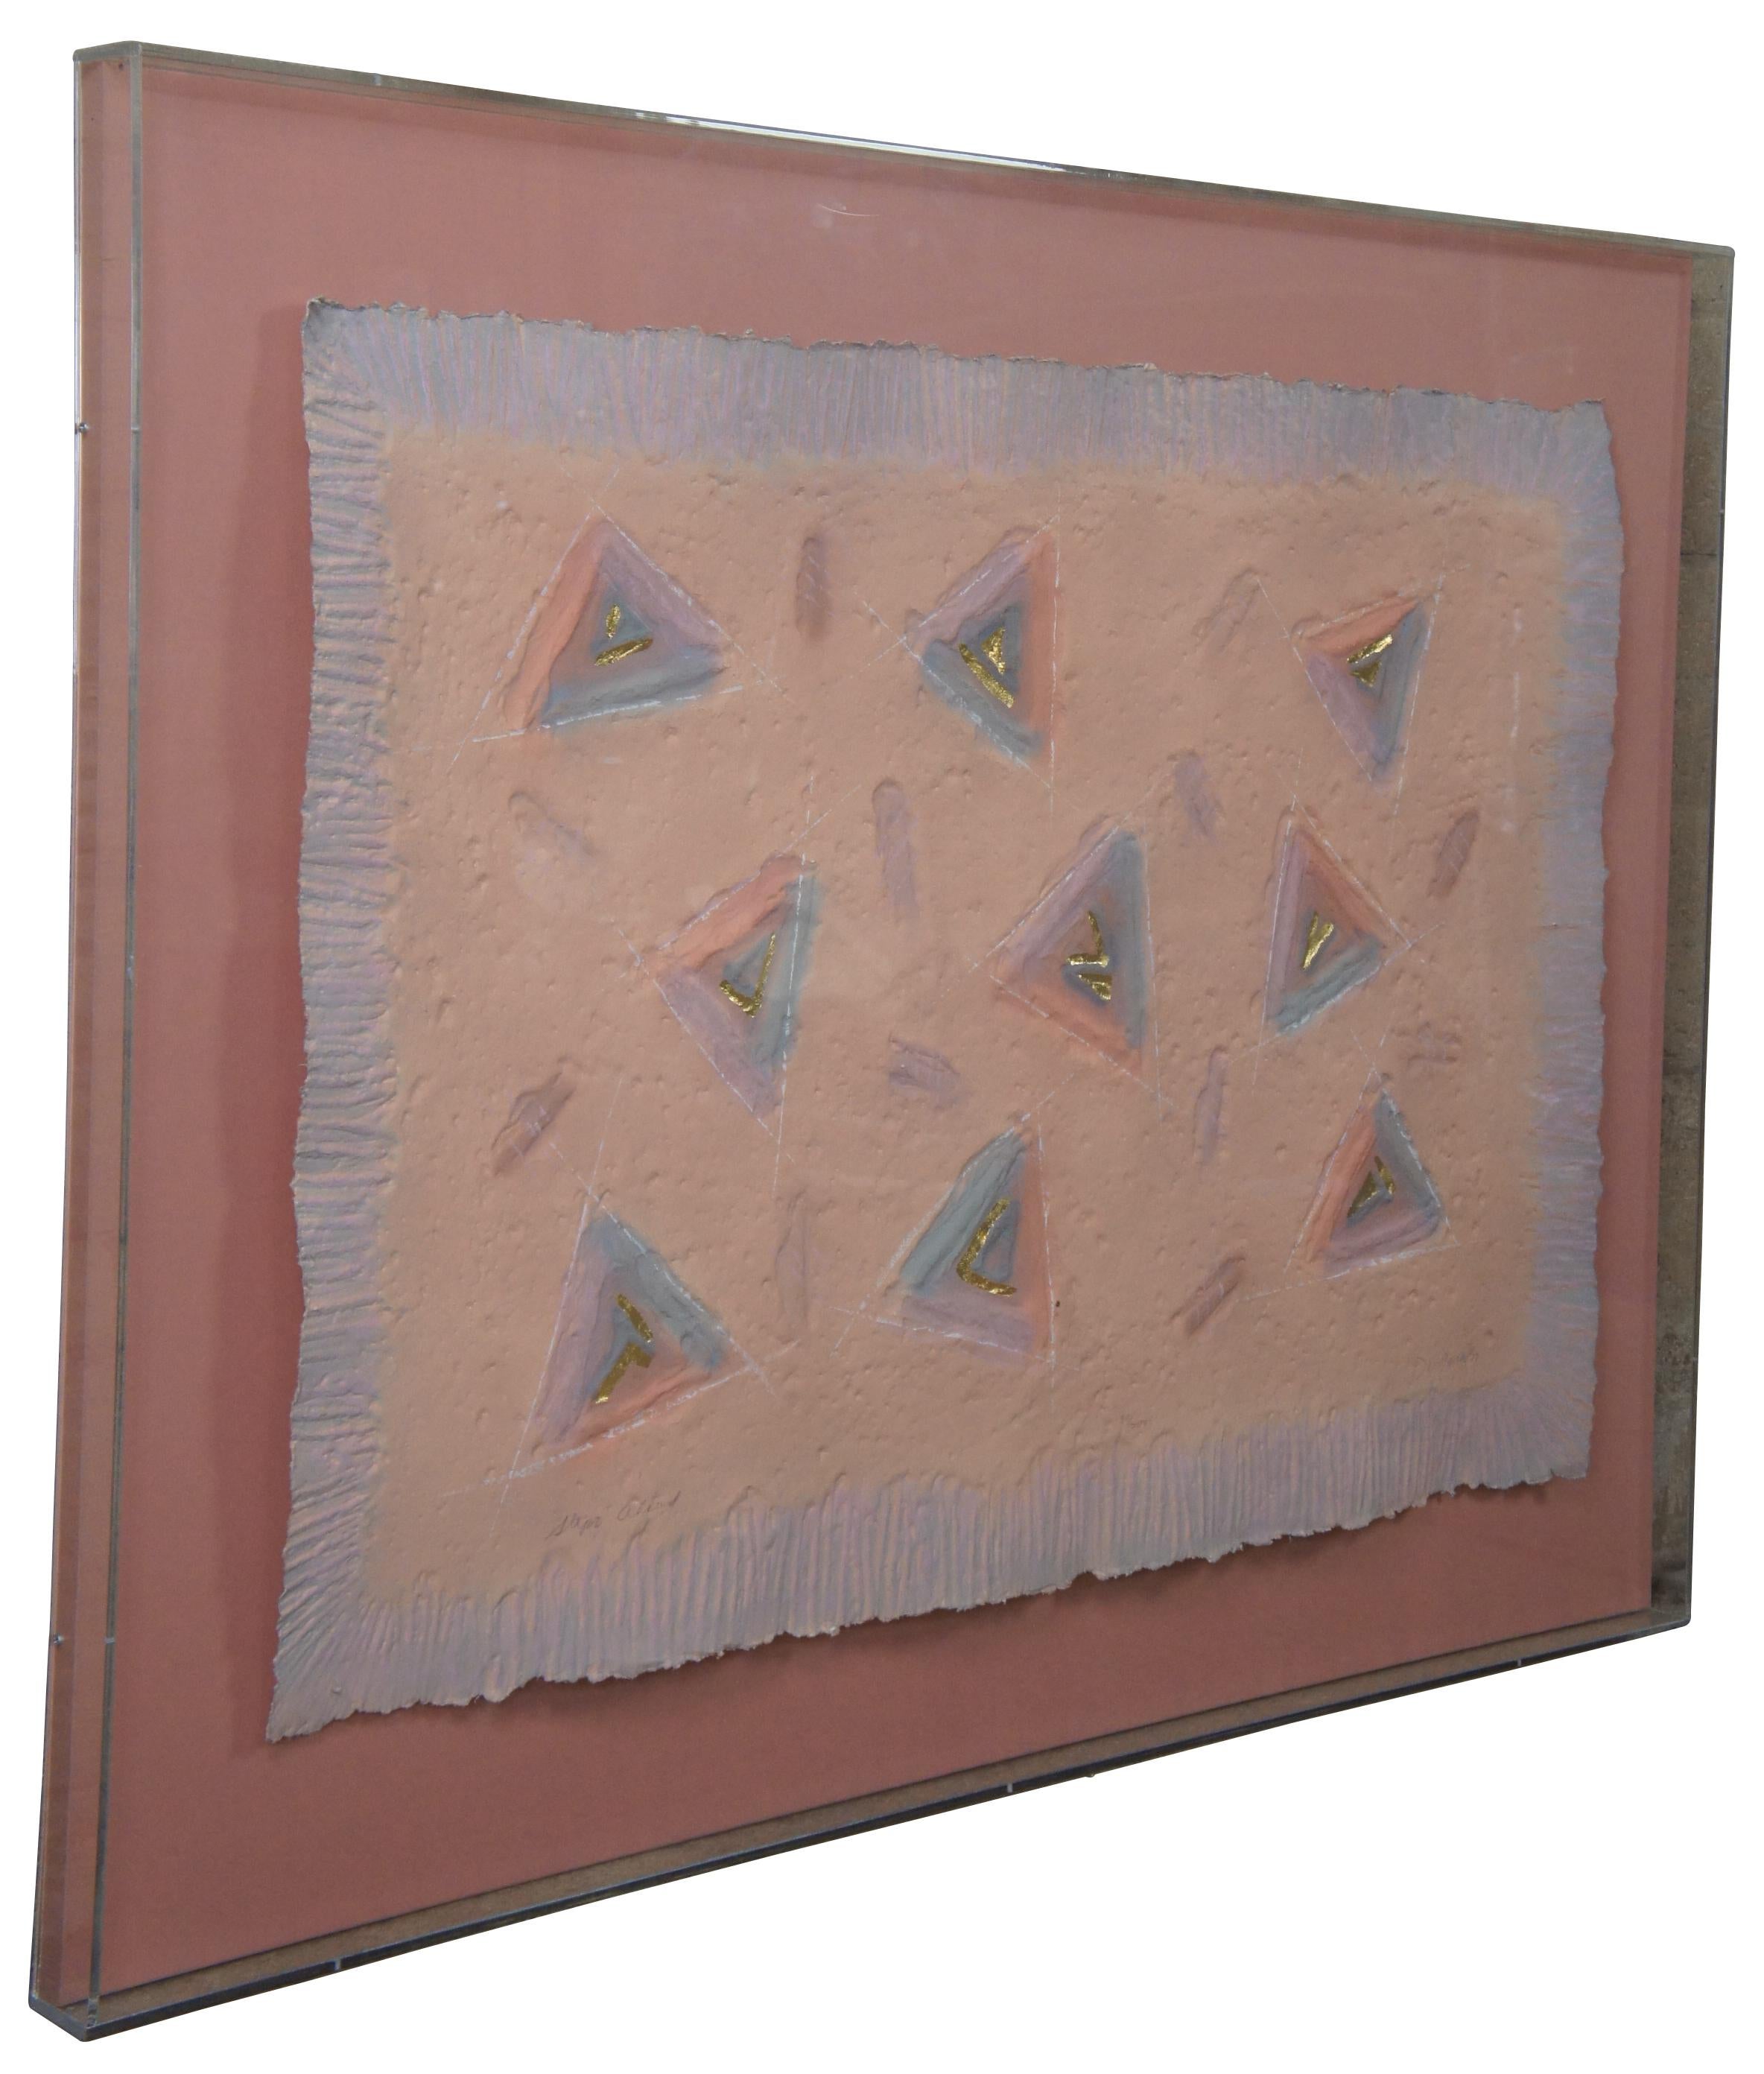 1988 Ann Dergara, Gemälde in Mischtechnik. Handgeschnitzte und farbige Prägung von einer Platte auf einer Ätzpresse. Das handgefertigte 